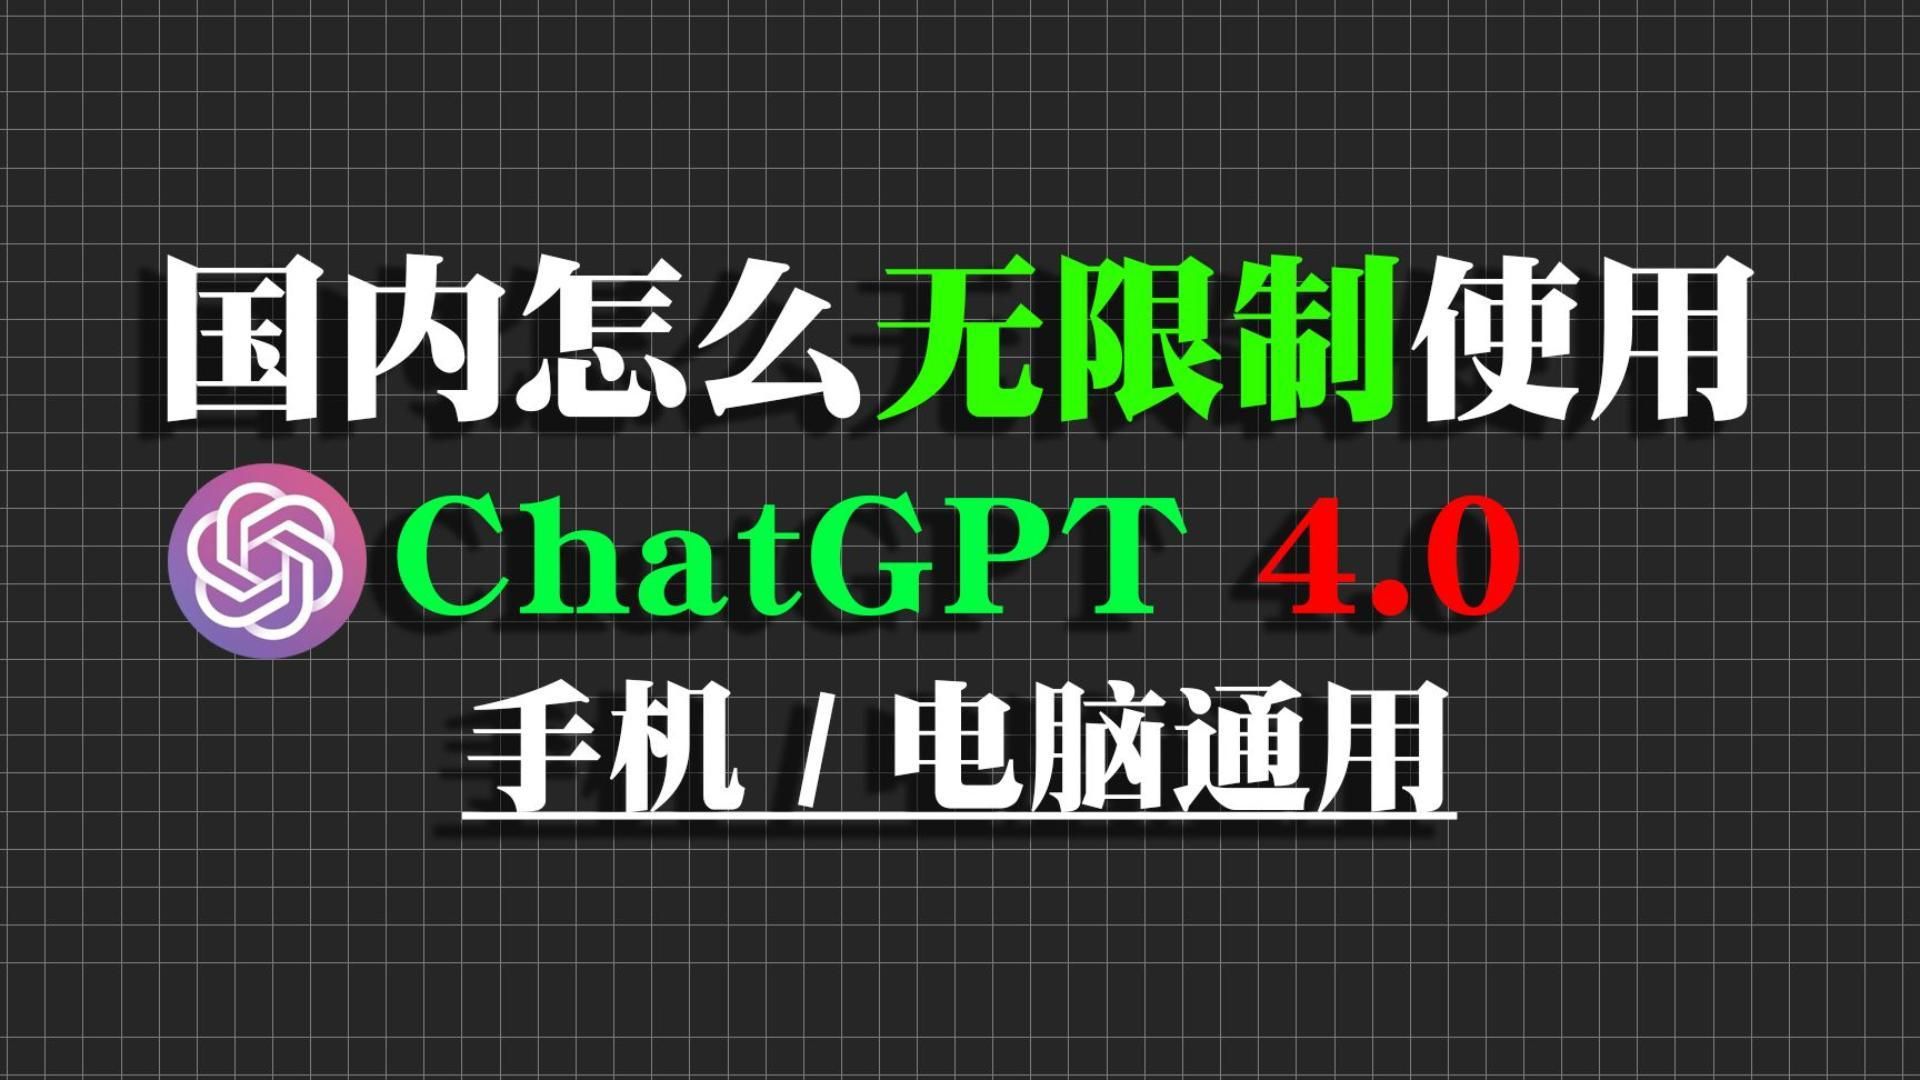 分享国内可免费无限制使用的ChatGPT4.0